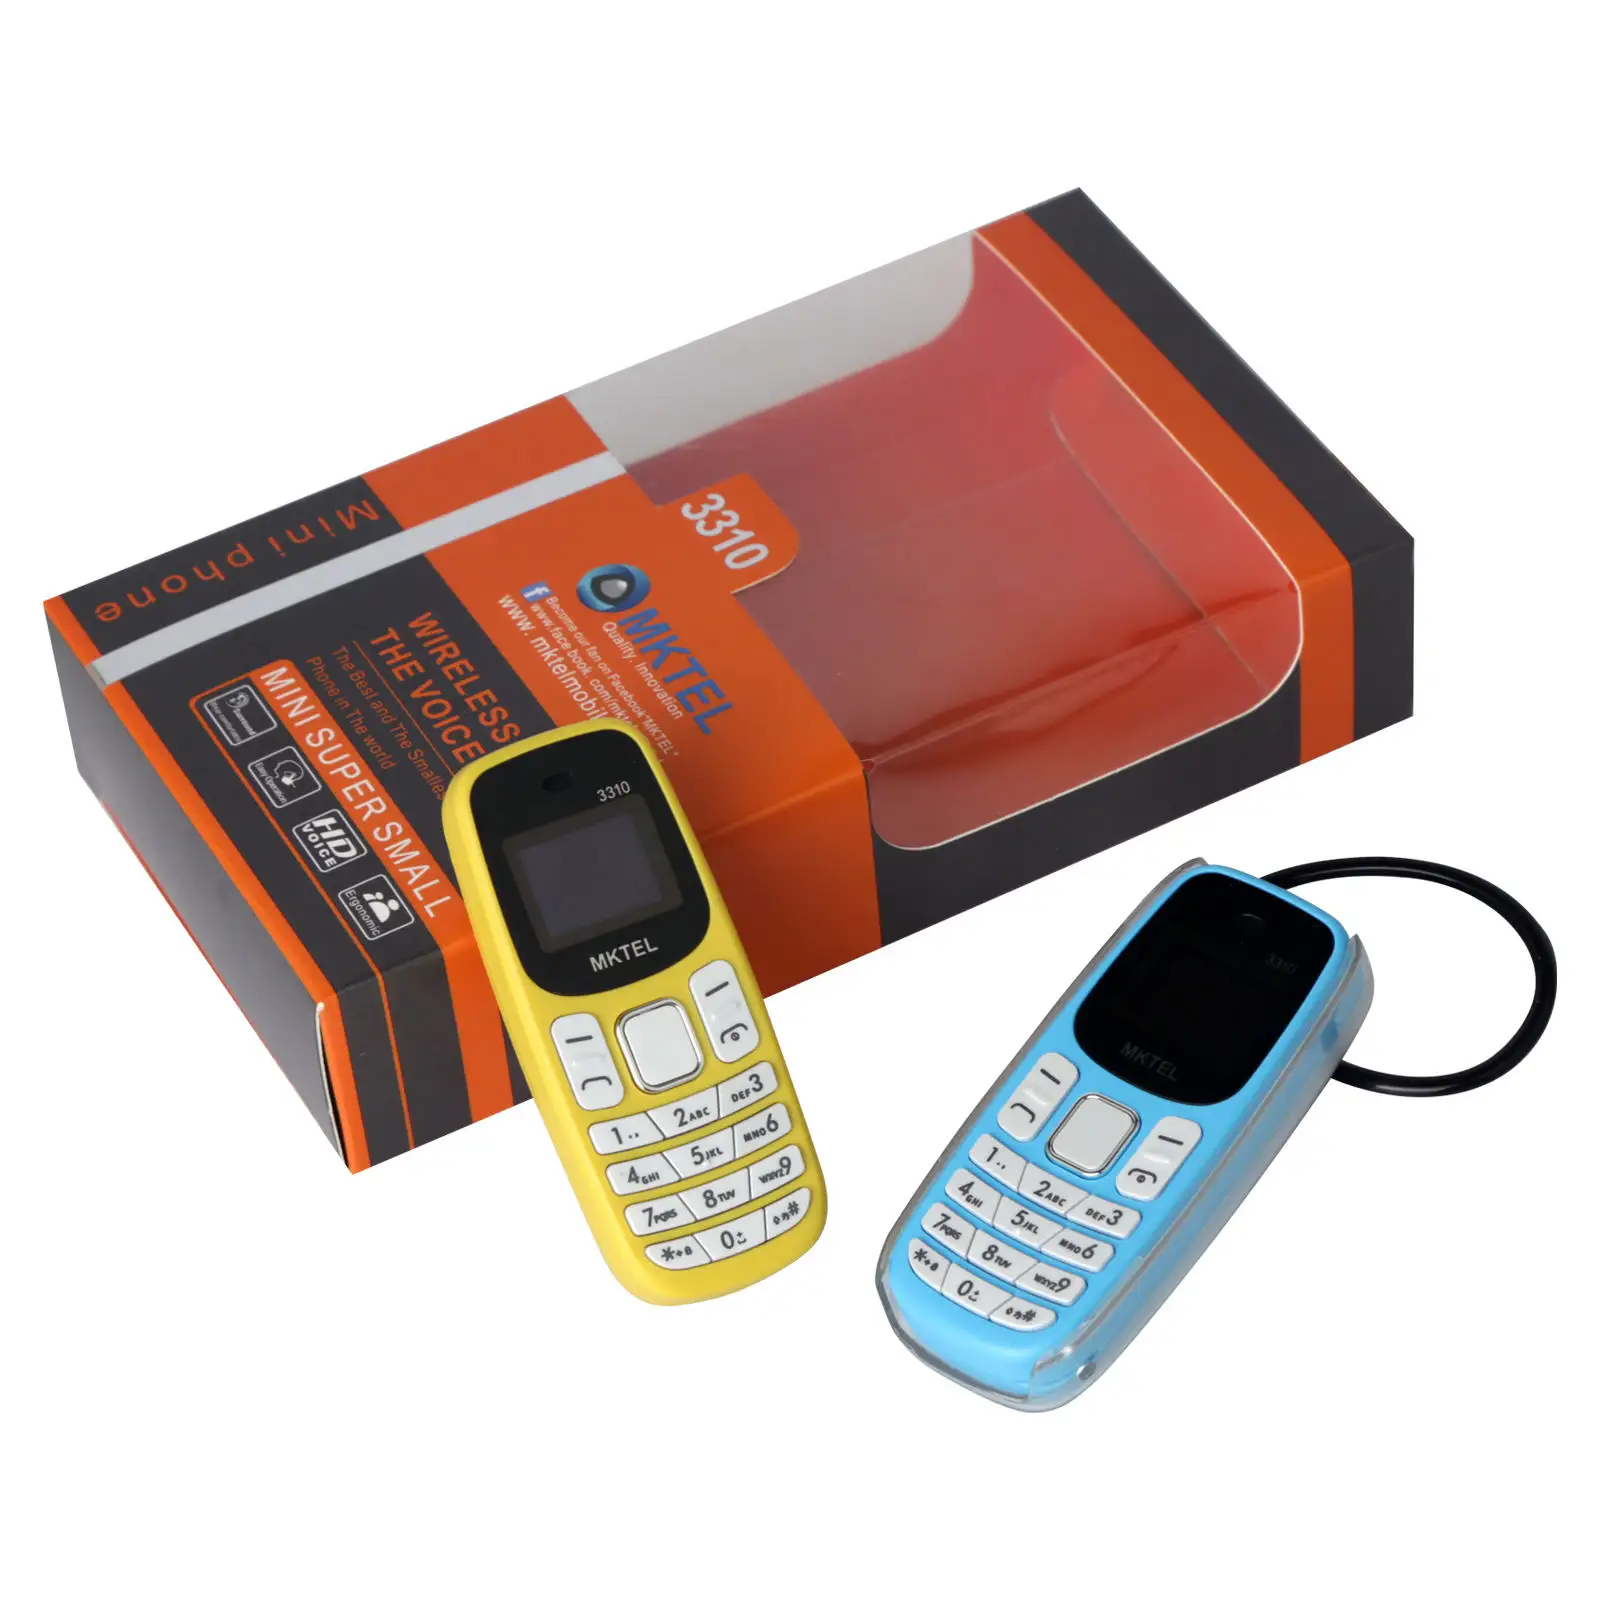 공장 잠금 해제 미니 0.66 인치 스크린 이어폰 2G GSM 기능 듀얼 SIM 카드 휴대 전화 노키아 BM10 핸드폰